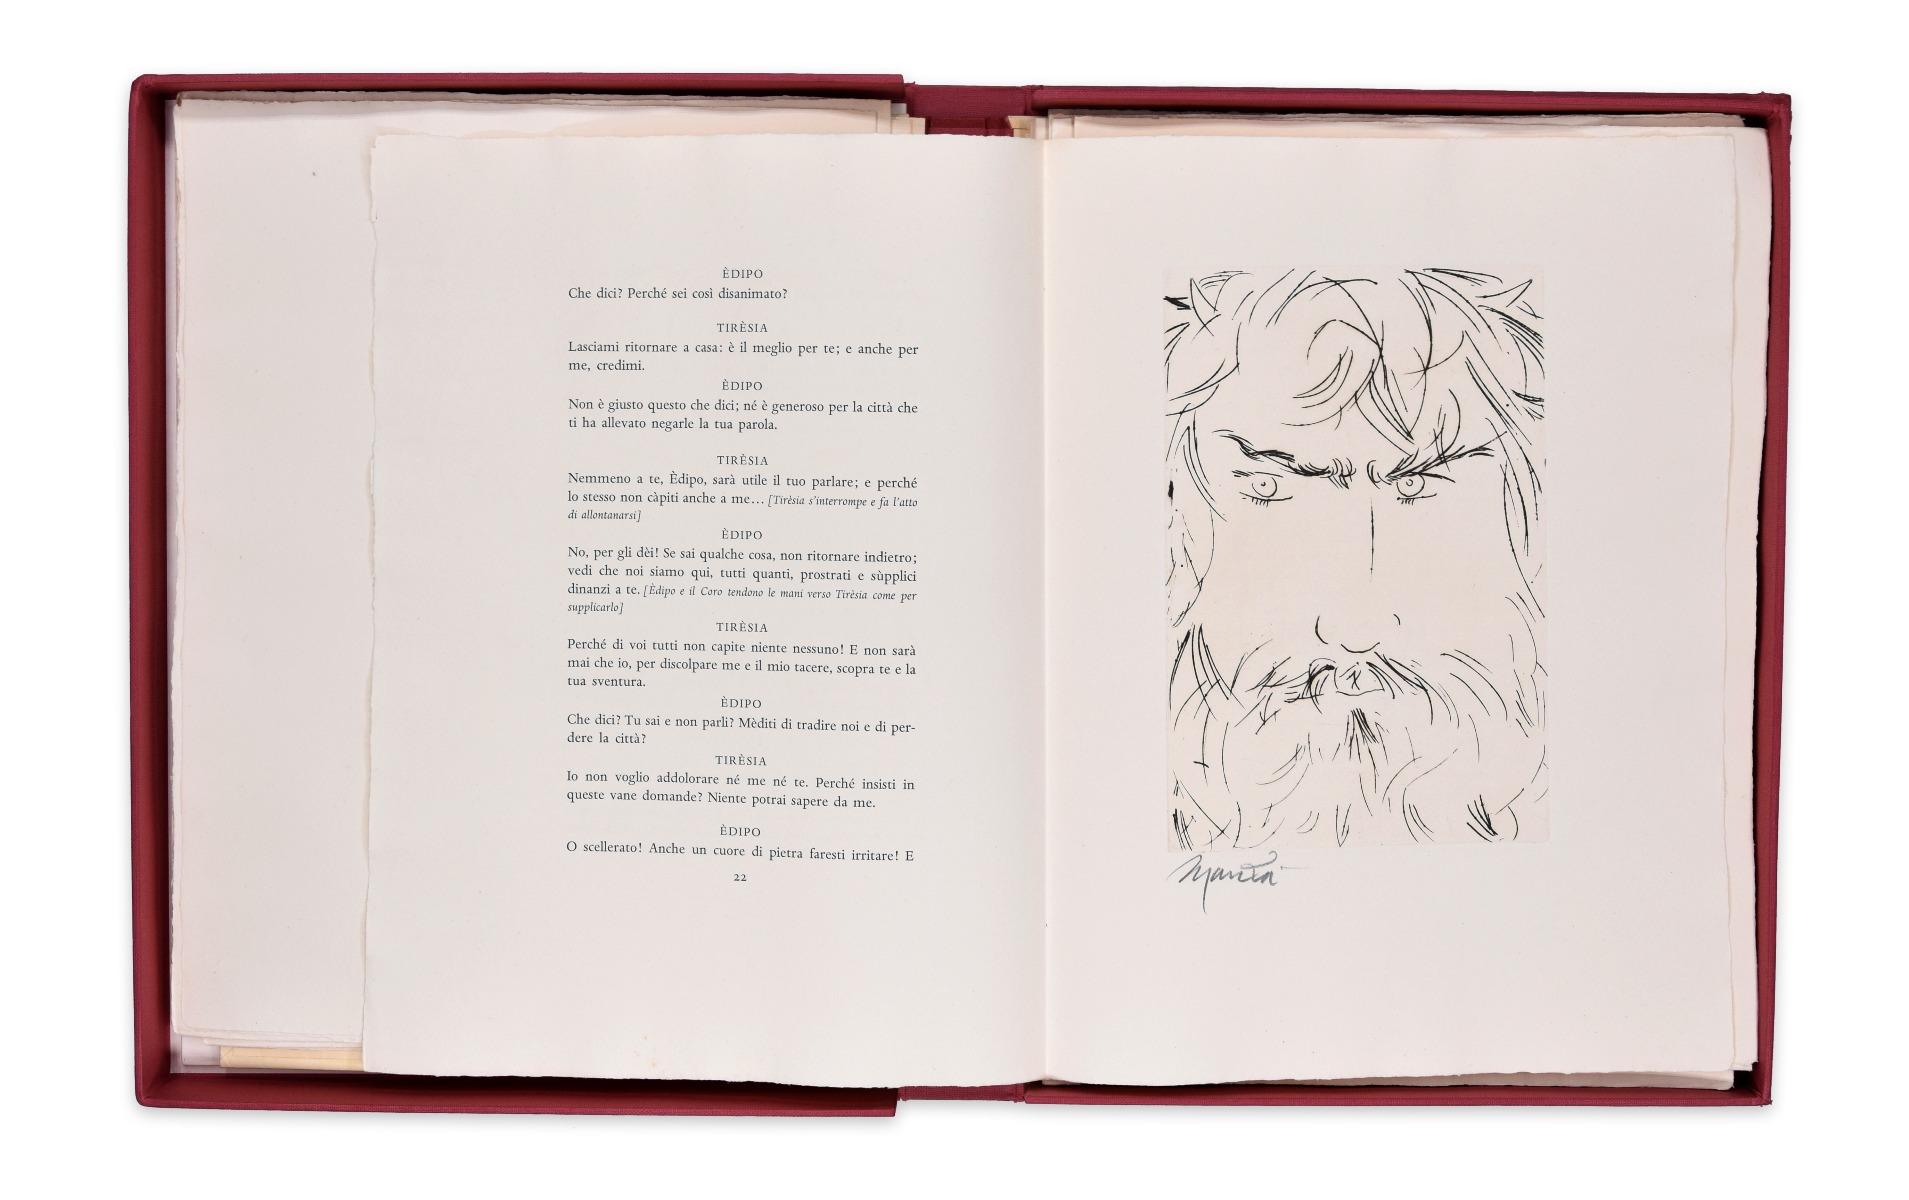 Livre rare « King Oedipus » illustré par Giacomo Manz - 1968